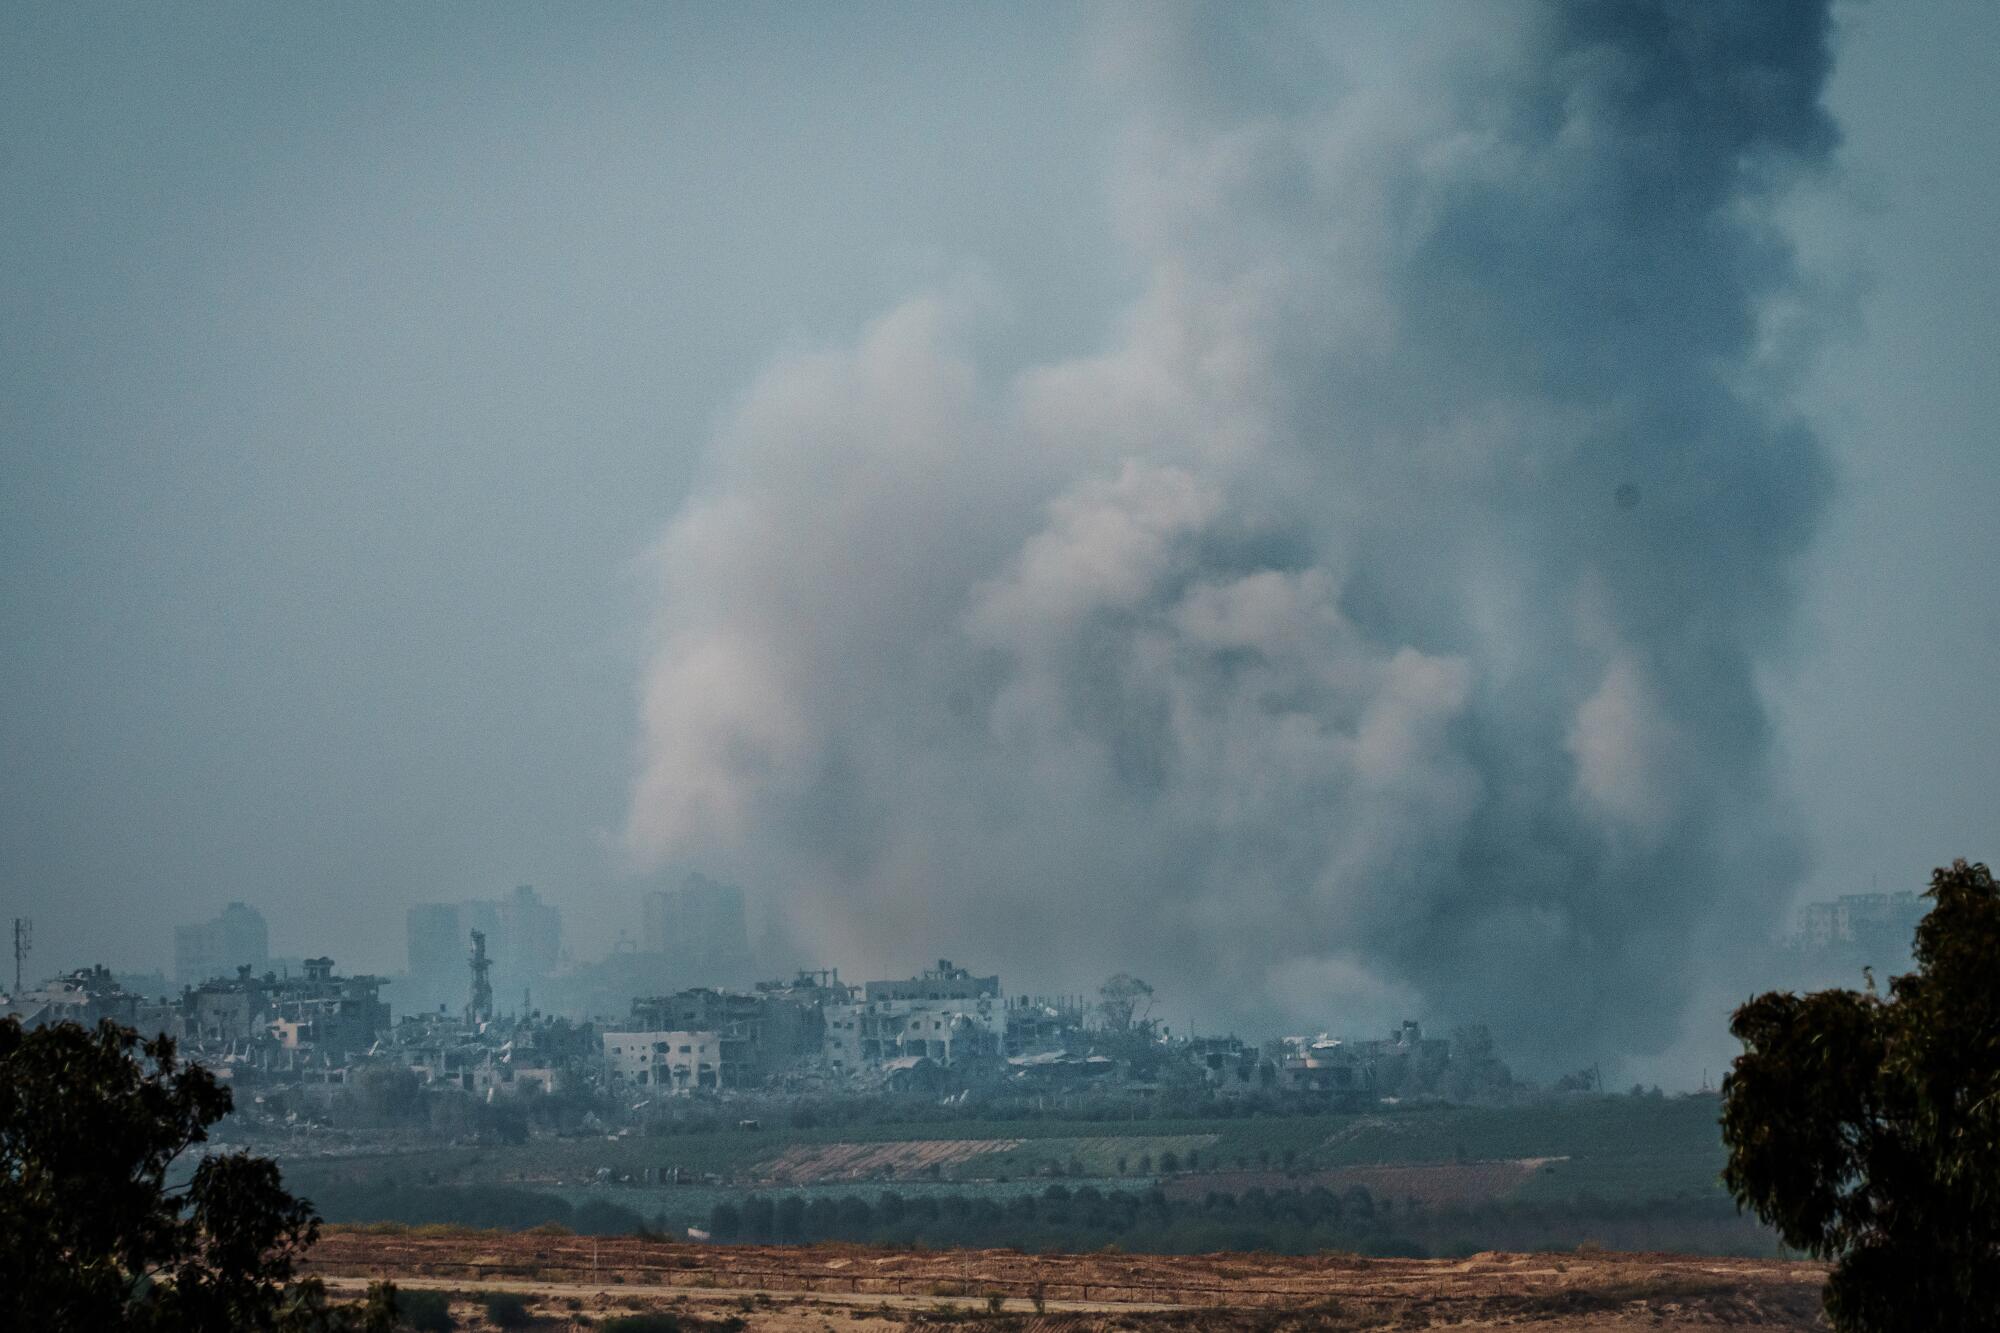 Plumes of smoke over Gaza.